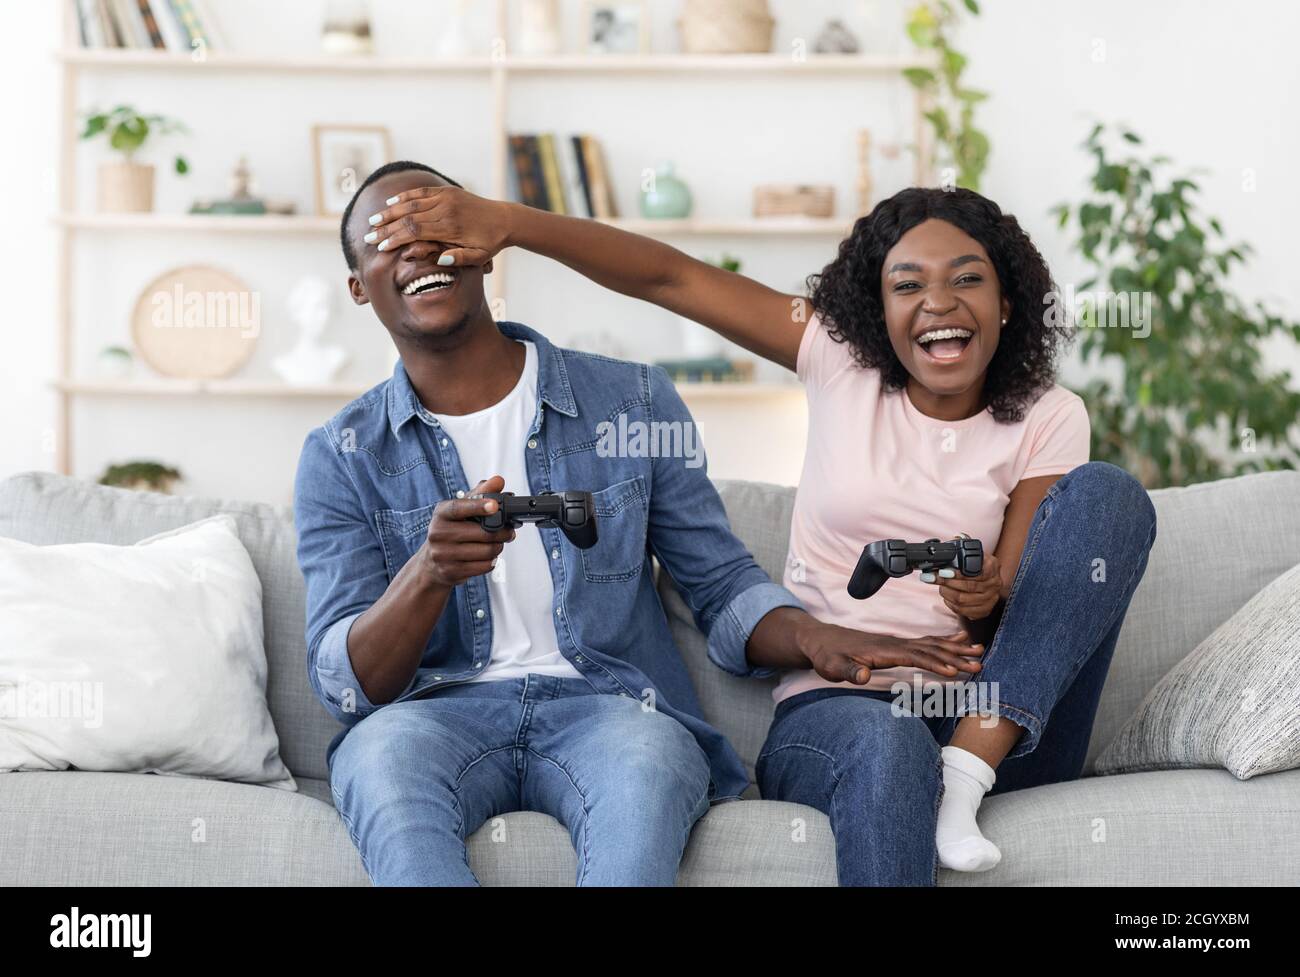 Premium Photo  Cheerful boyfriend and girlfriend playing video